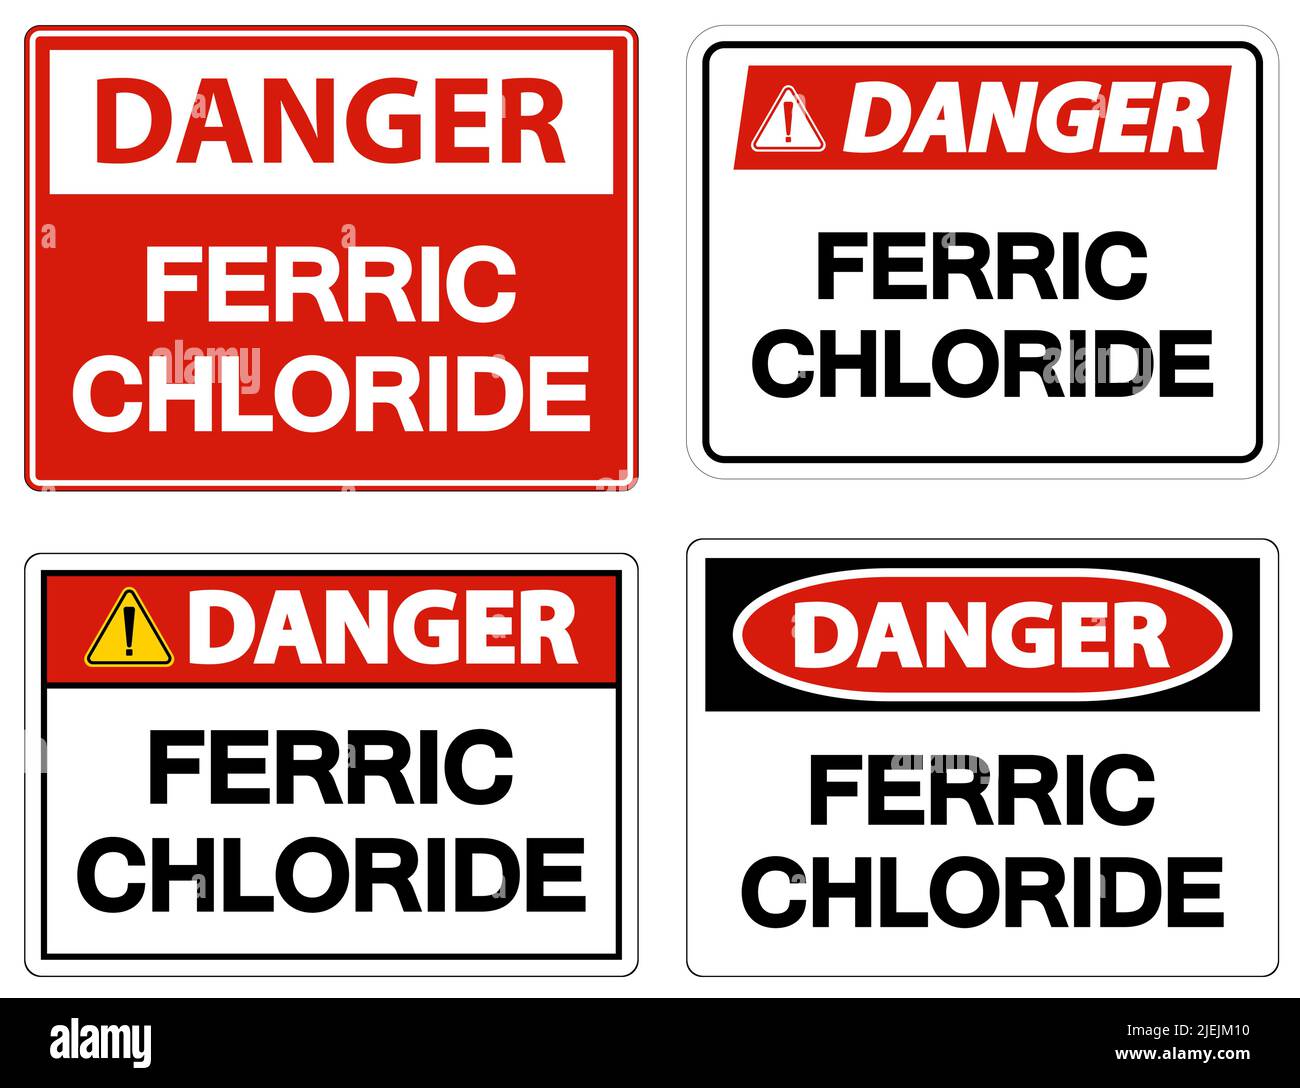 Danger chimique symbole de chlorure ferrique sur fond blanc Illustration de Vecteur